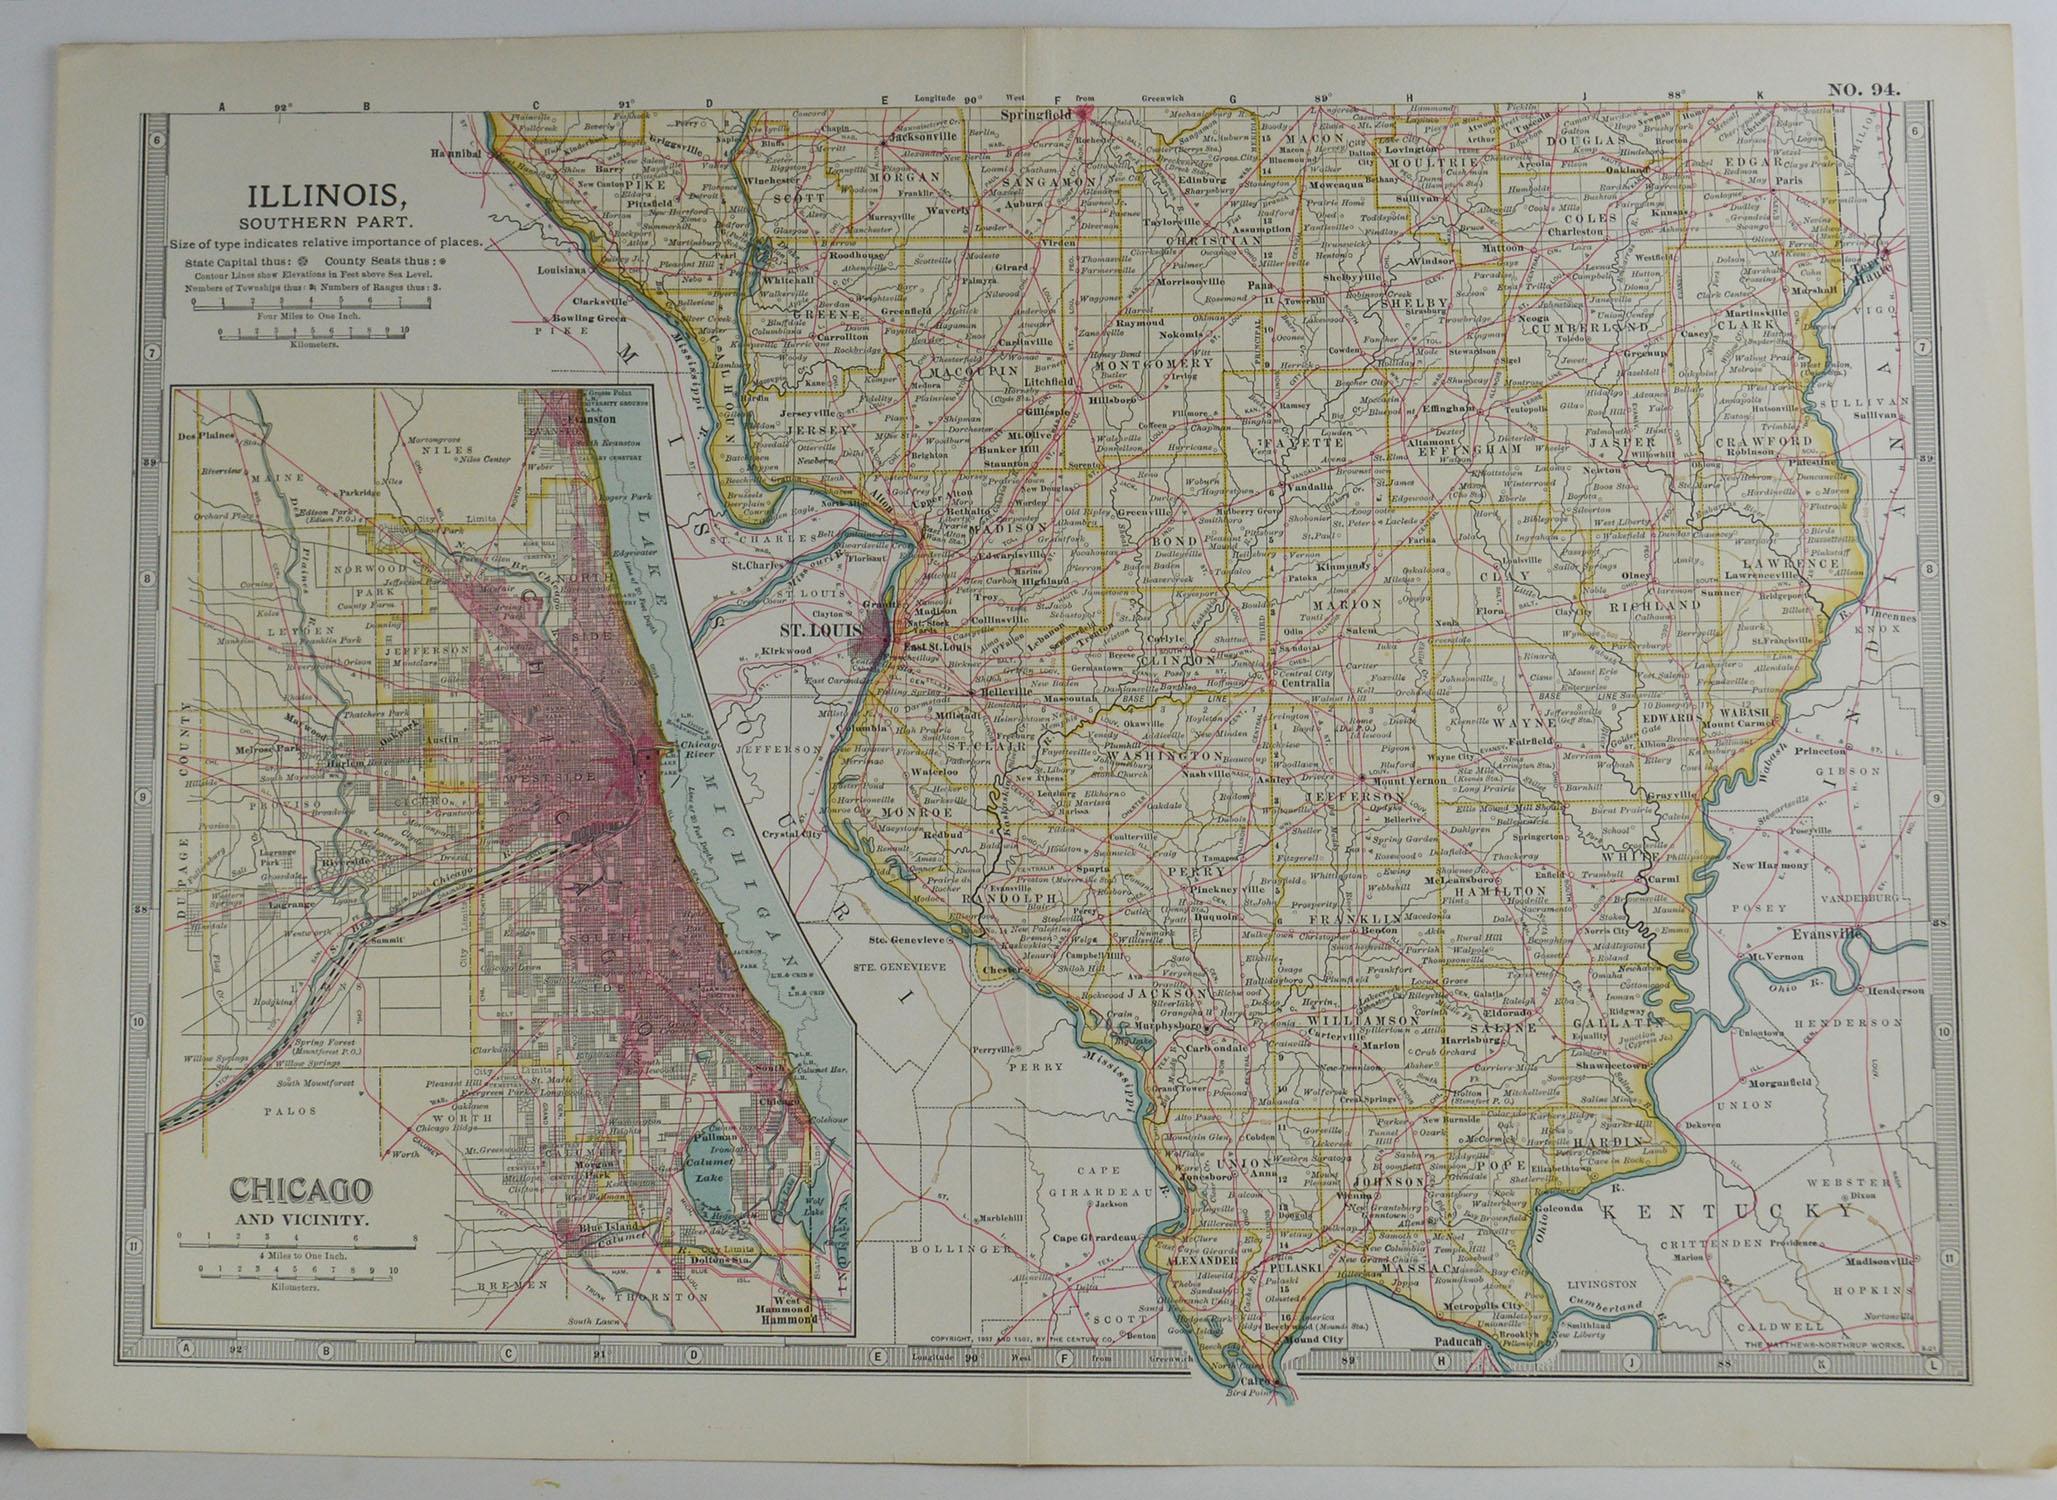 English Original Antique Map of Illinois, circa 1890